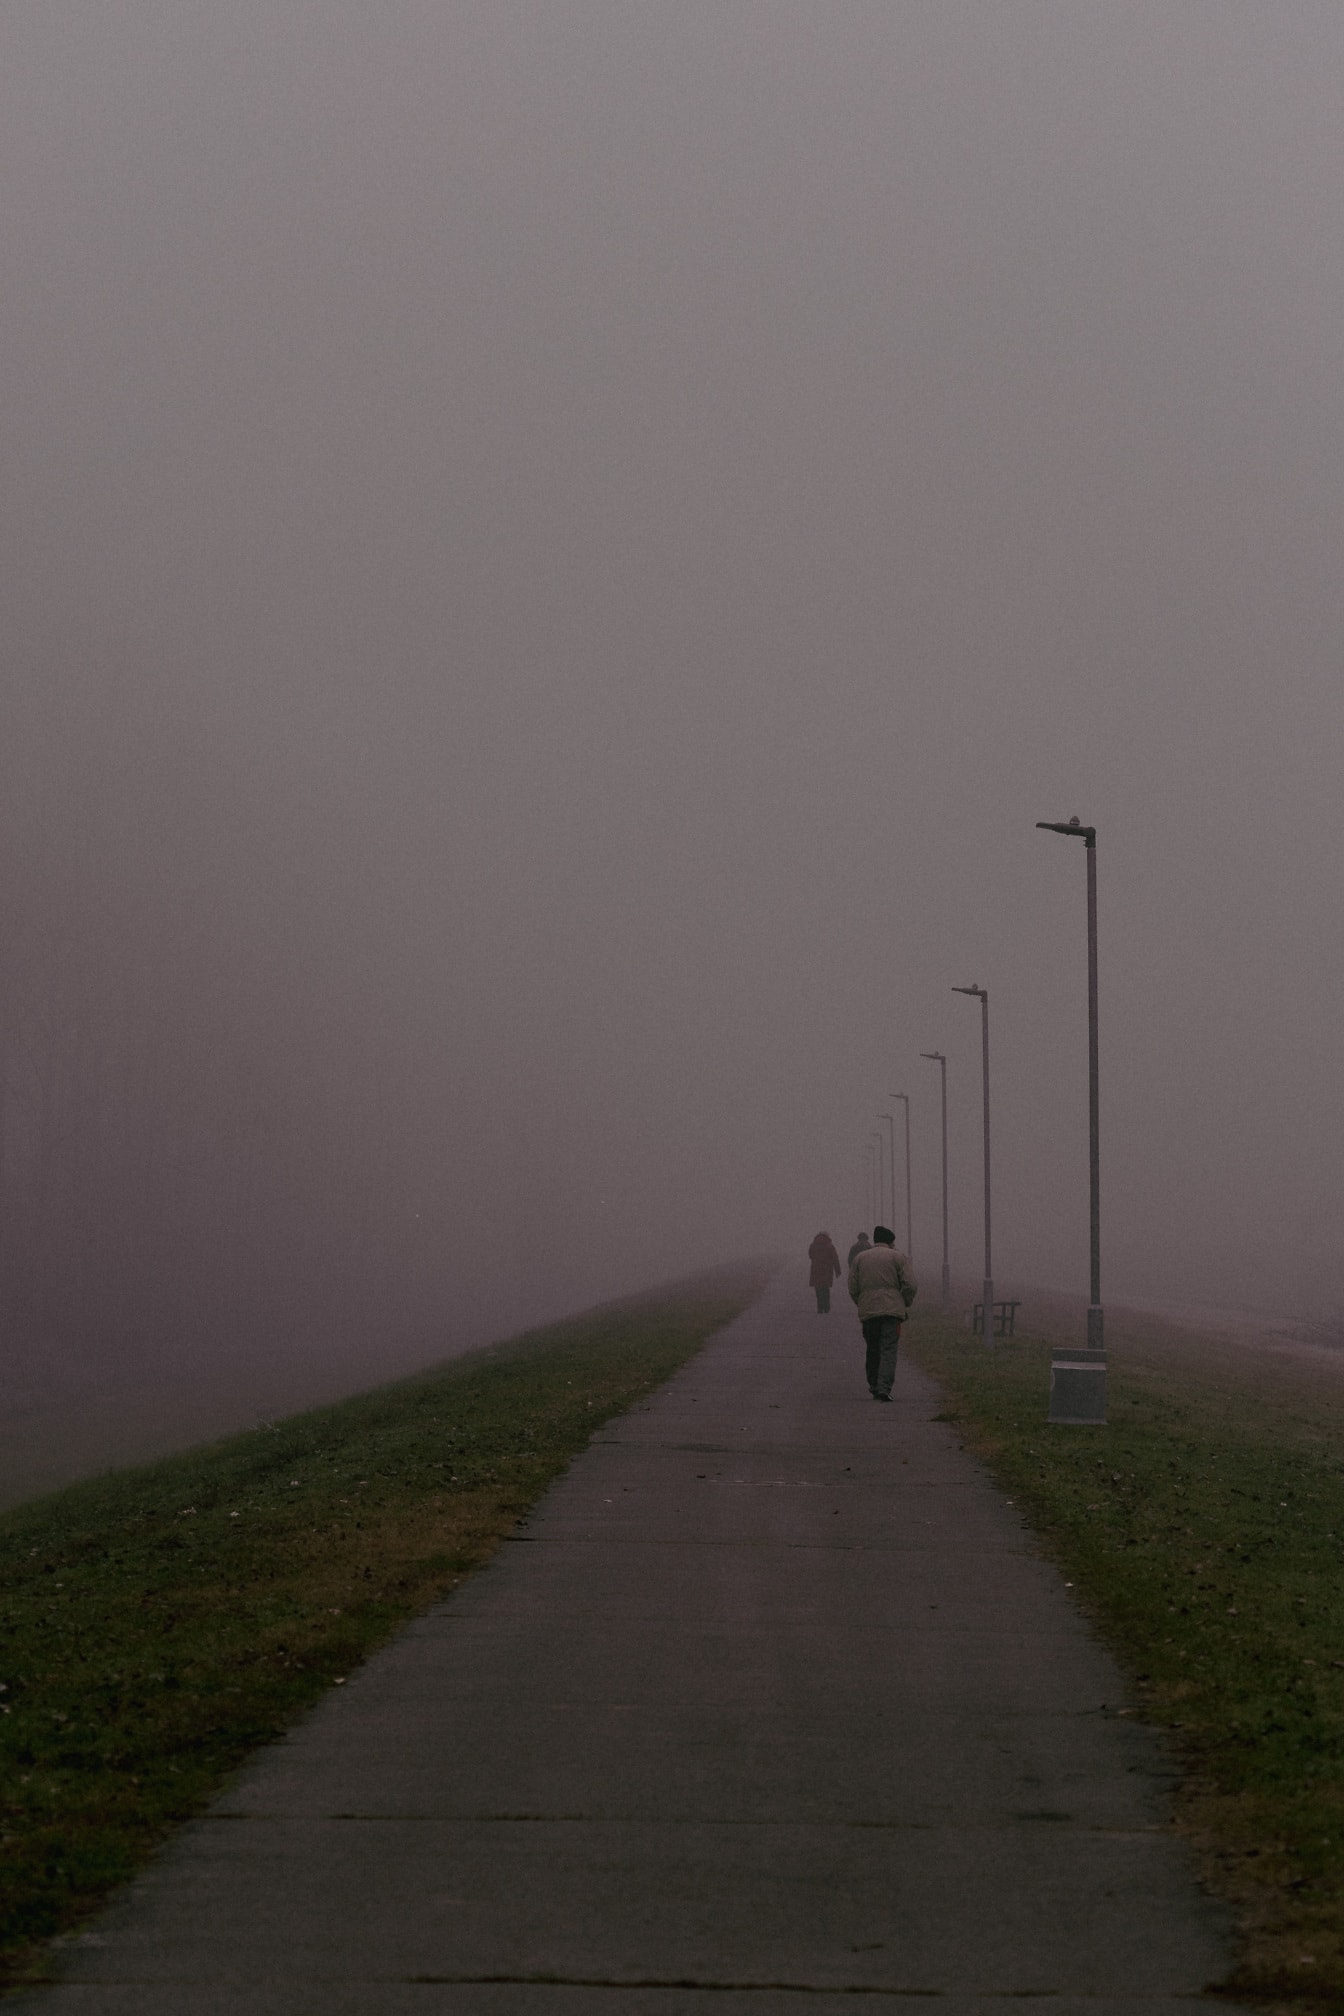 Pedestre caminhando em estrada de asfalto nebuloso pela manhã